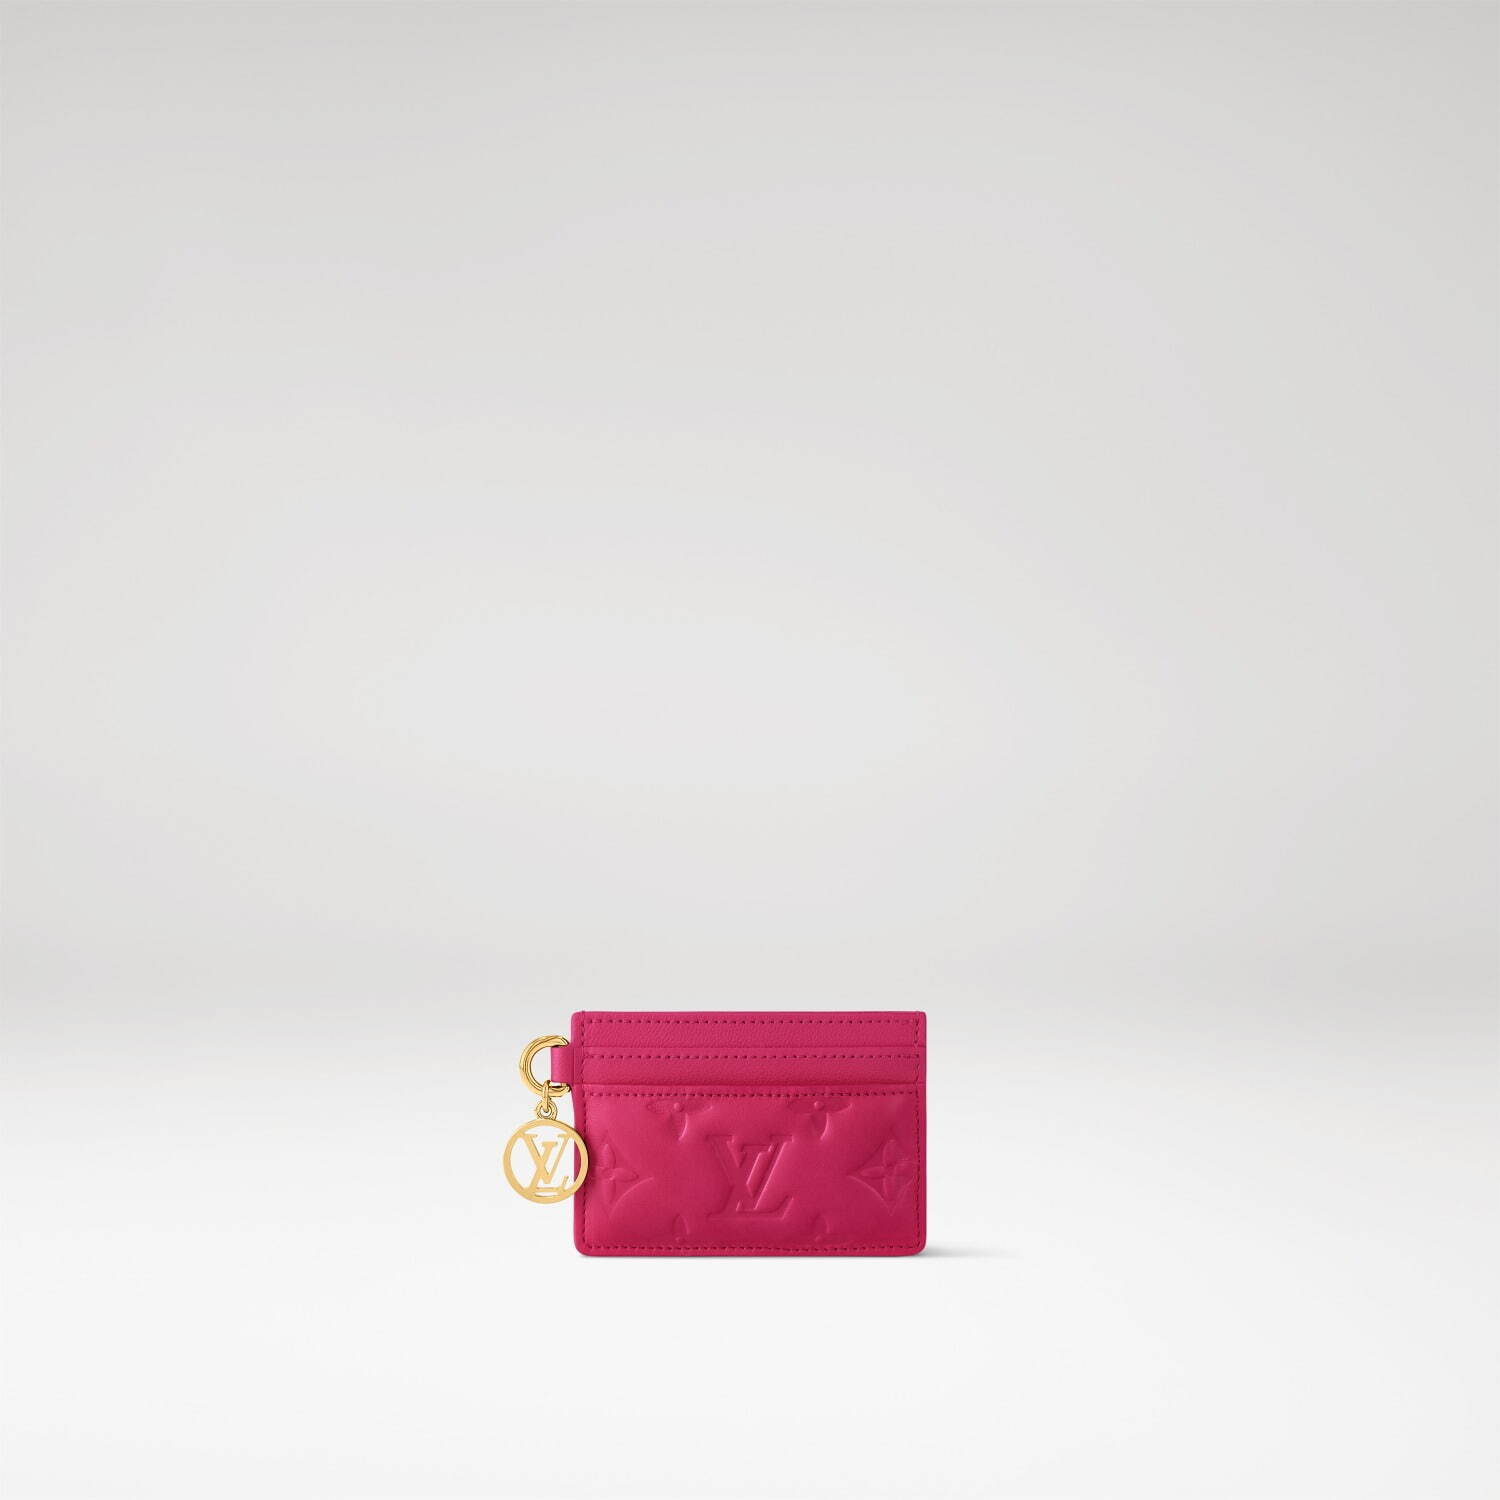 ルイ・ヴィトン“クッション着想”バッグ「クッサン」新色、鮮やかピンク